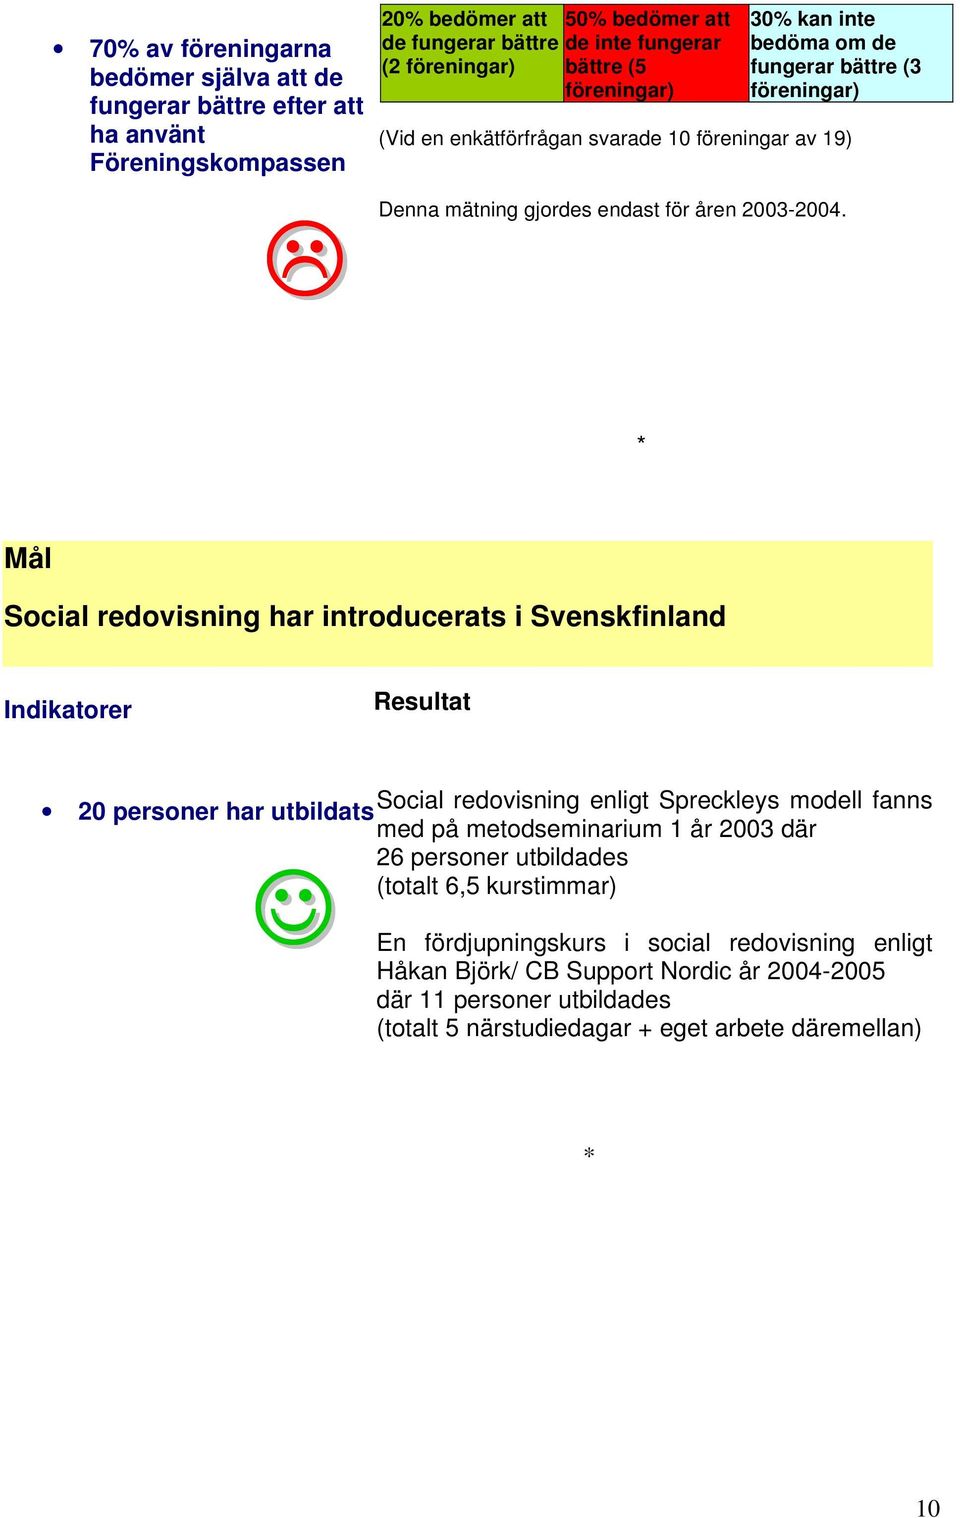 Mål Social redovisning har introducerats i Svenskfinland 20 personer har utbildats Social redovisning enligt Spreckleys modell fanns med på metodseminarium 1 år 2003 där 26 personer